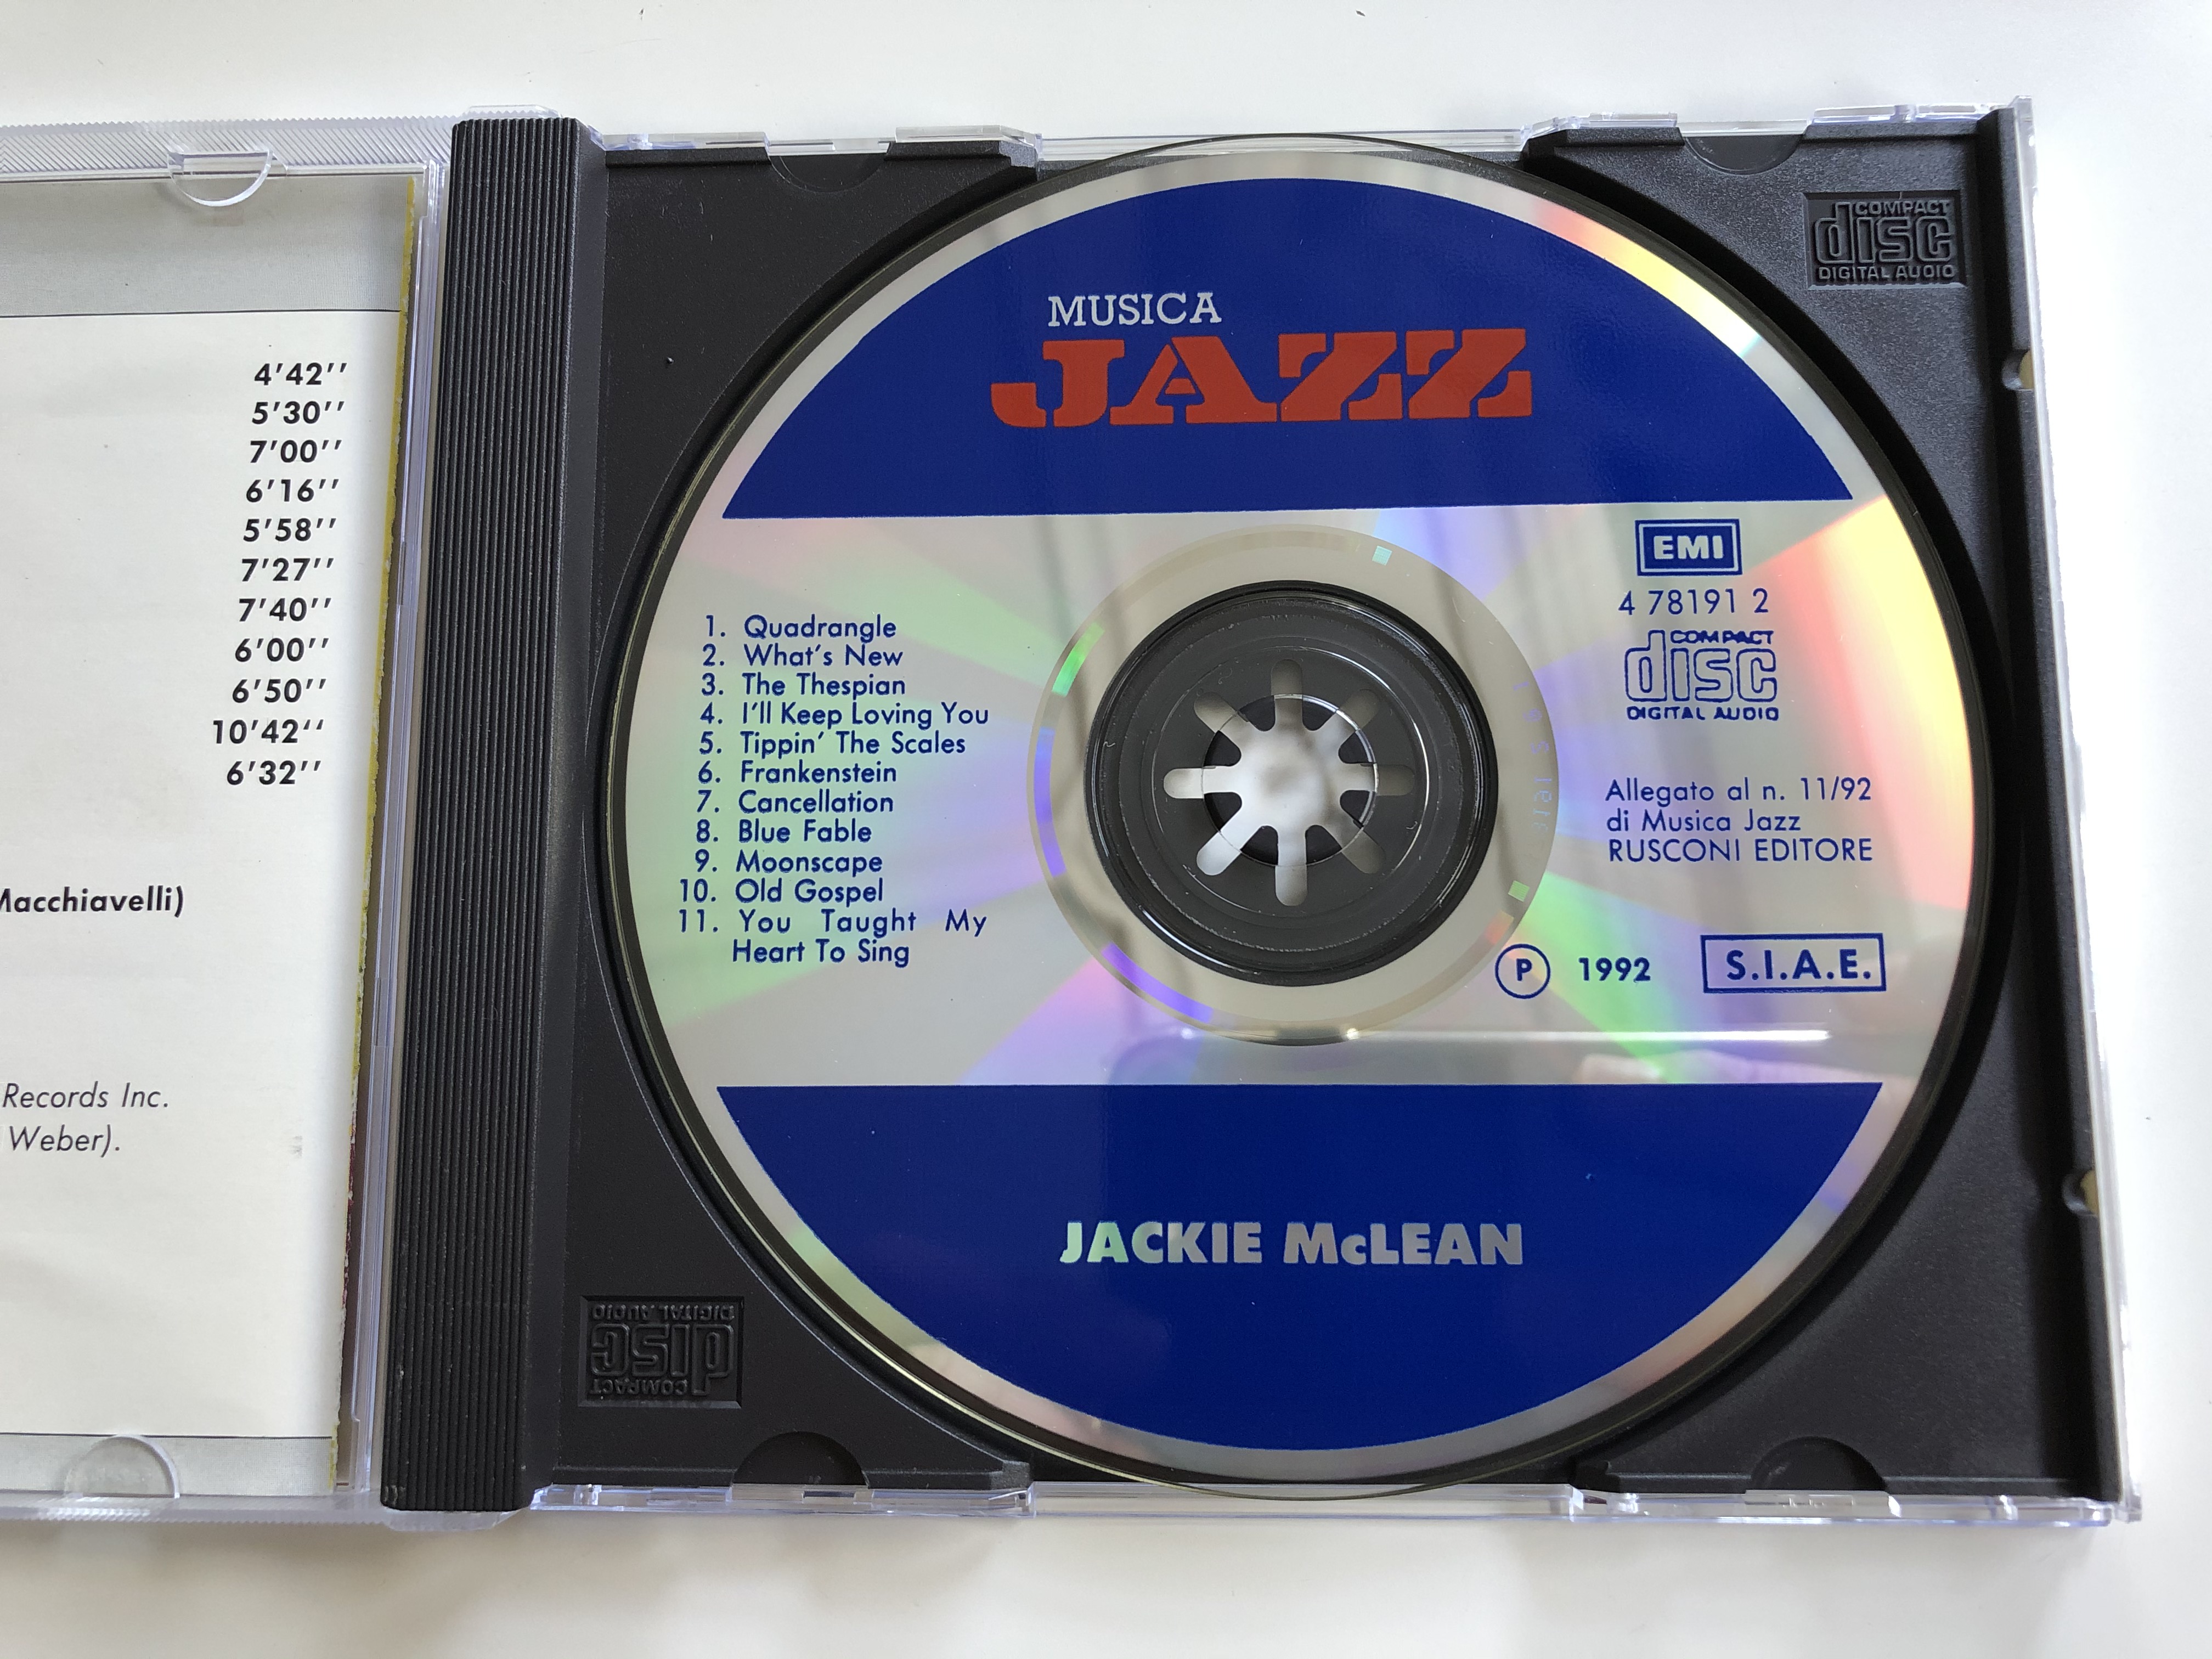 jackie-mclean-emi-audio-cd-1992-4781912-4-.jpg